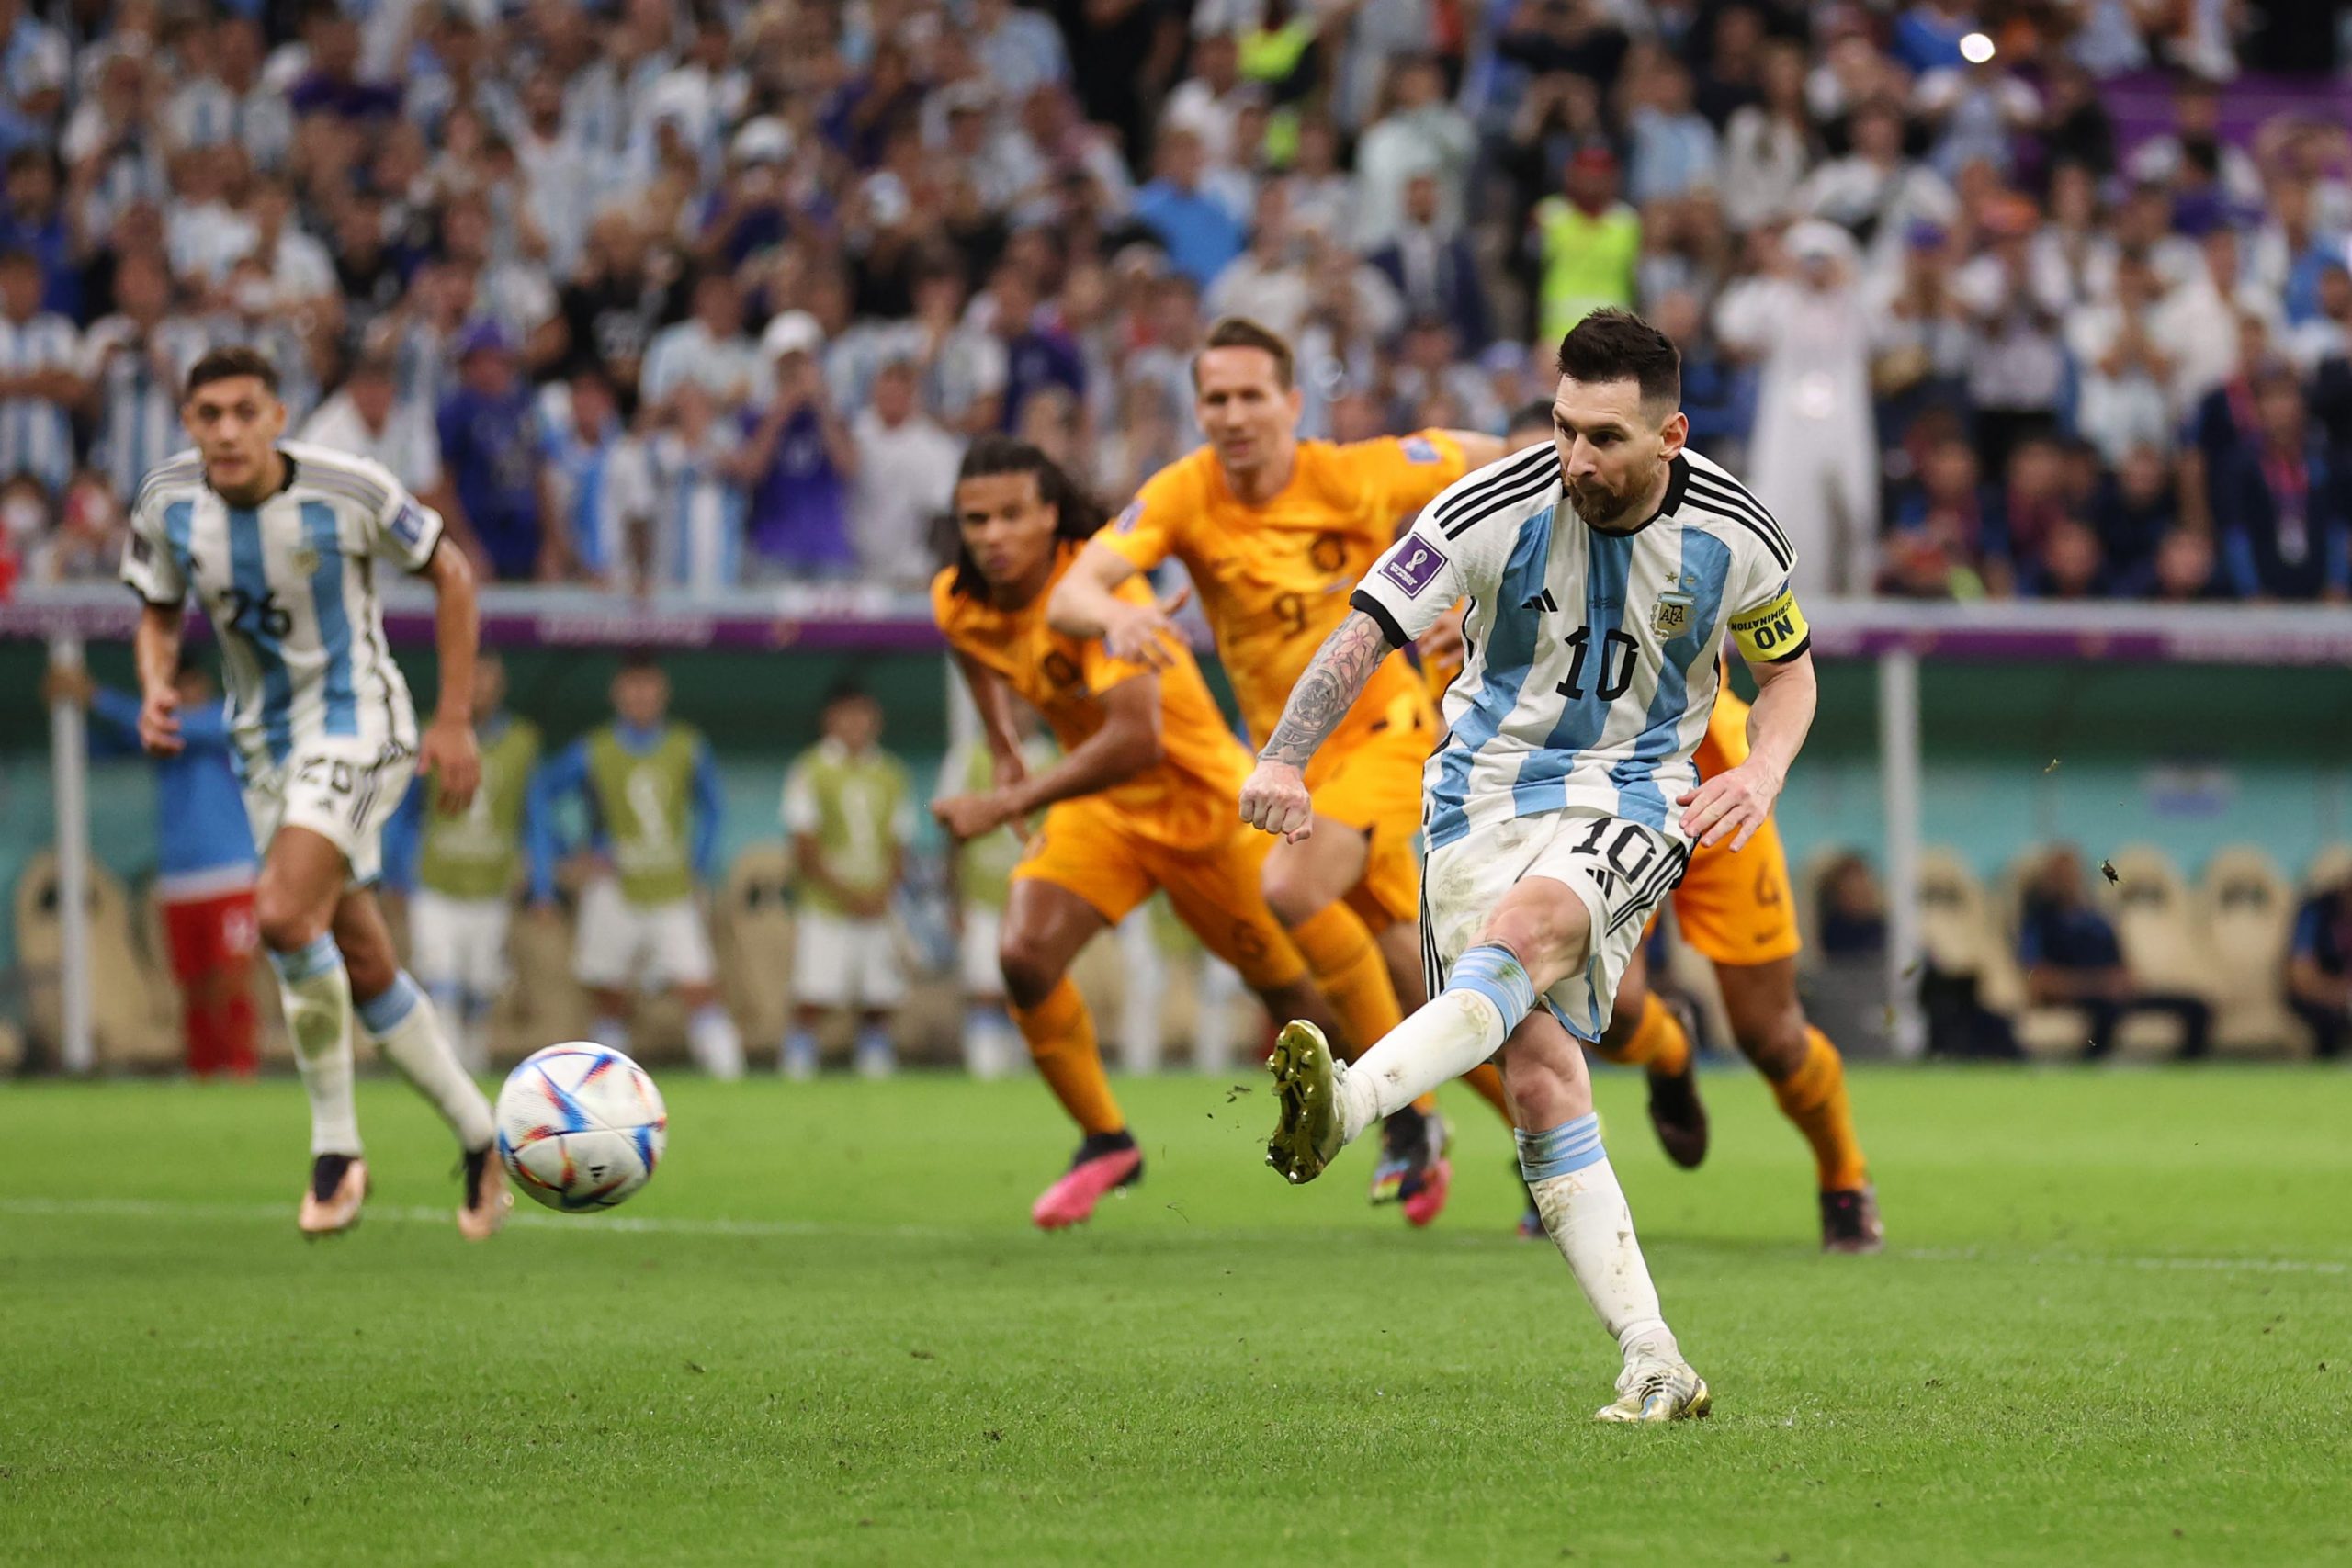 Remate de Messi no jogo entre Argentina e Países Baixos no Mundial de Futebol de 2022 no Qatar